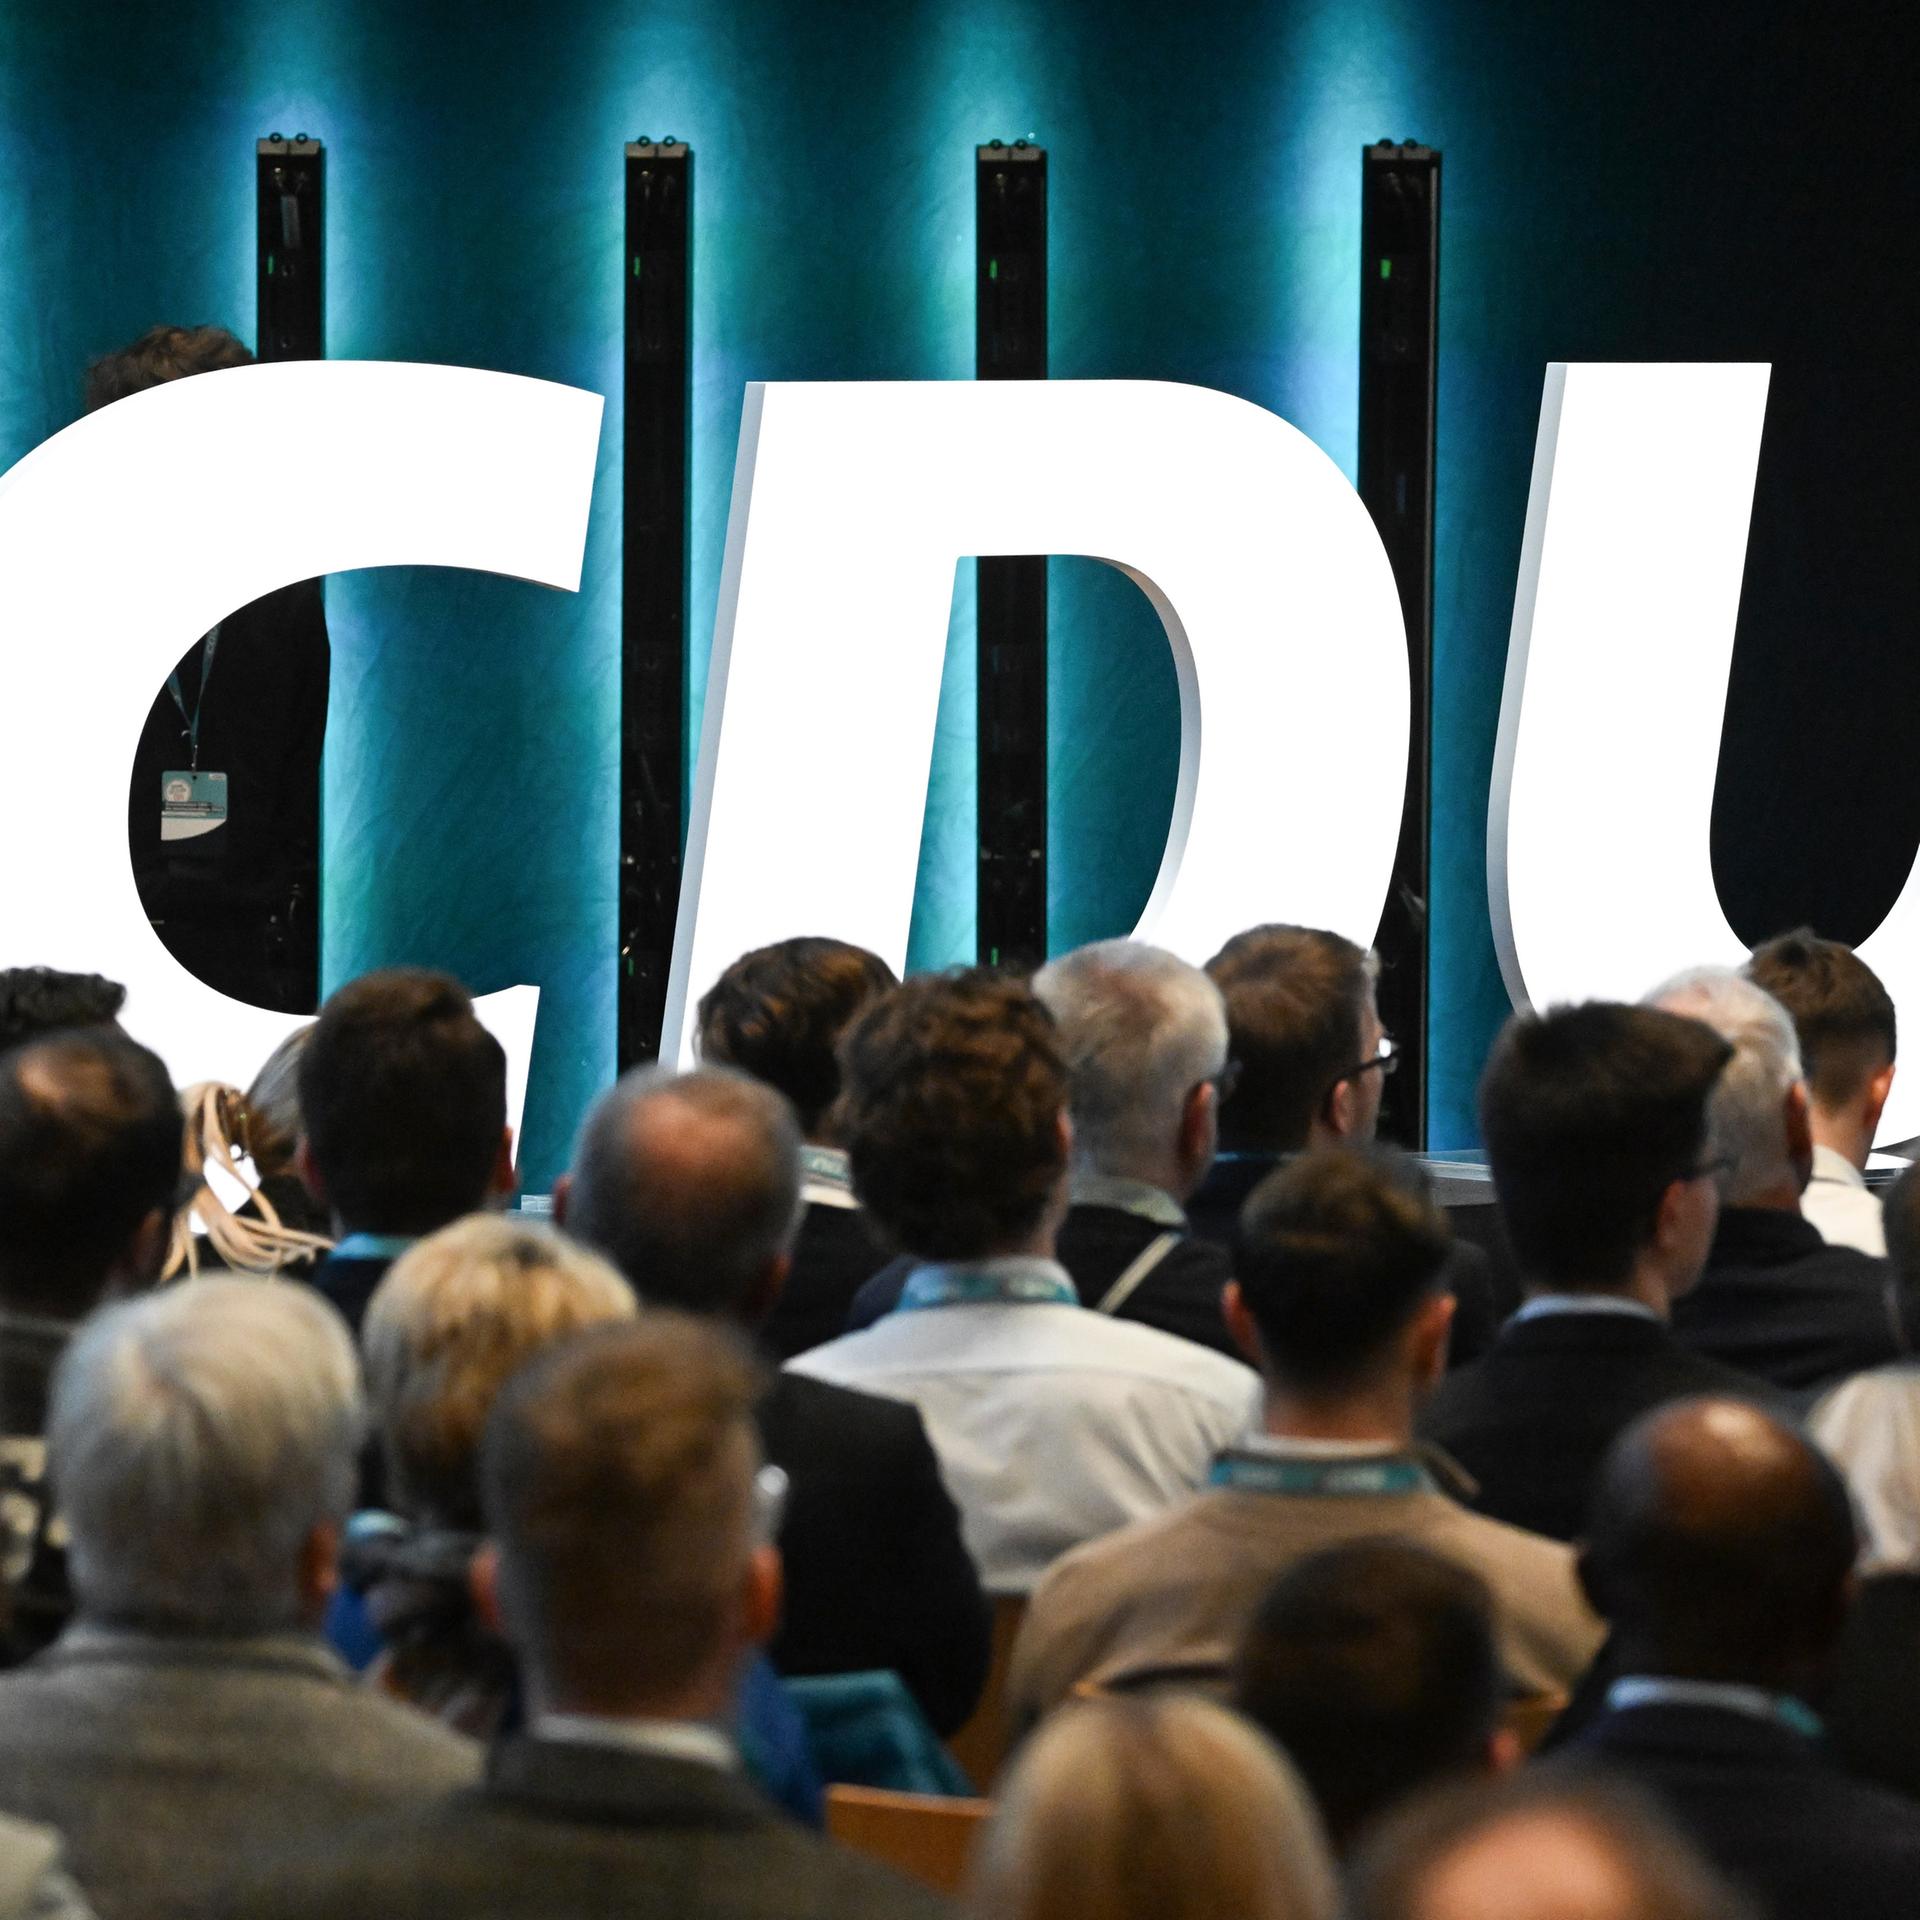 CDU-Grundsatzprogramm - Werte, Ziele, Zukunft: die Funktion von Parteiprogrammen